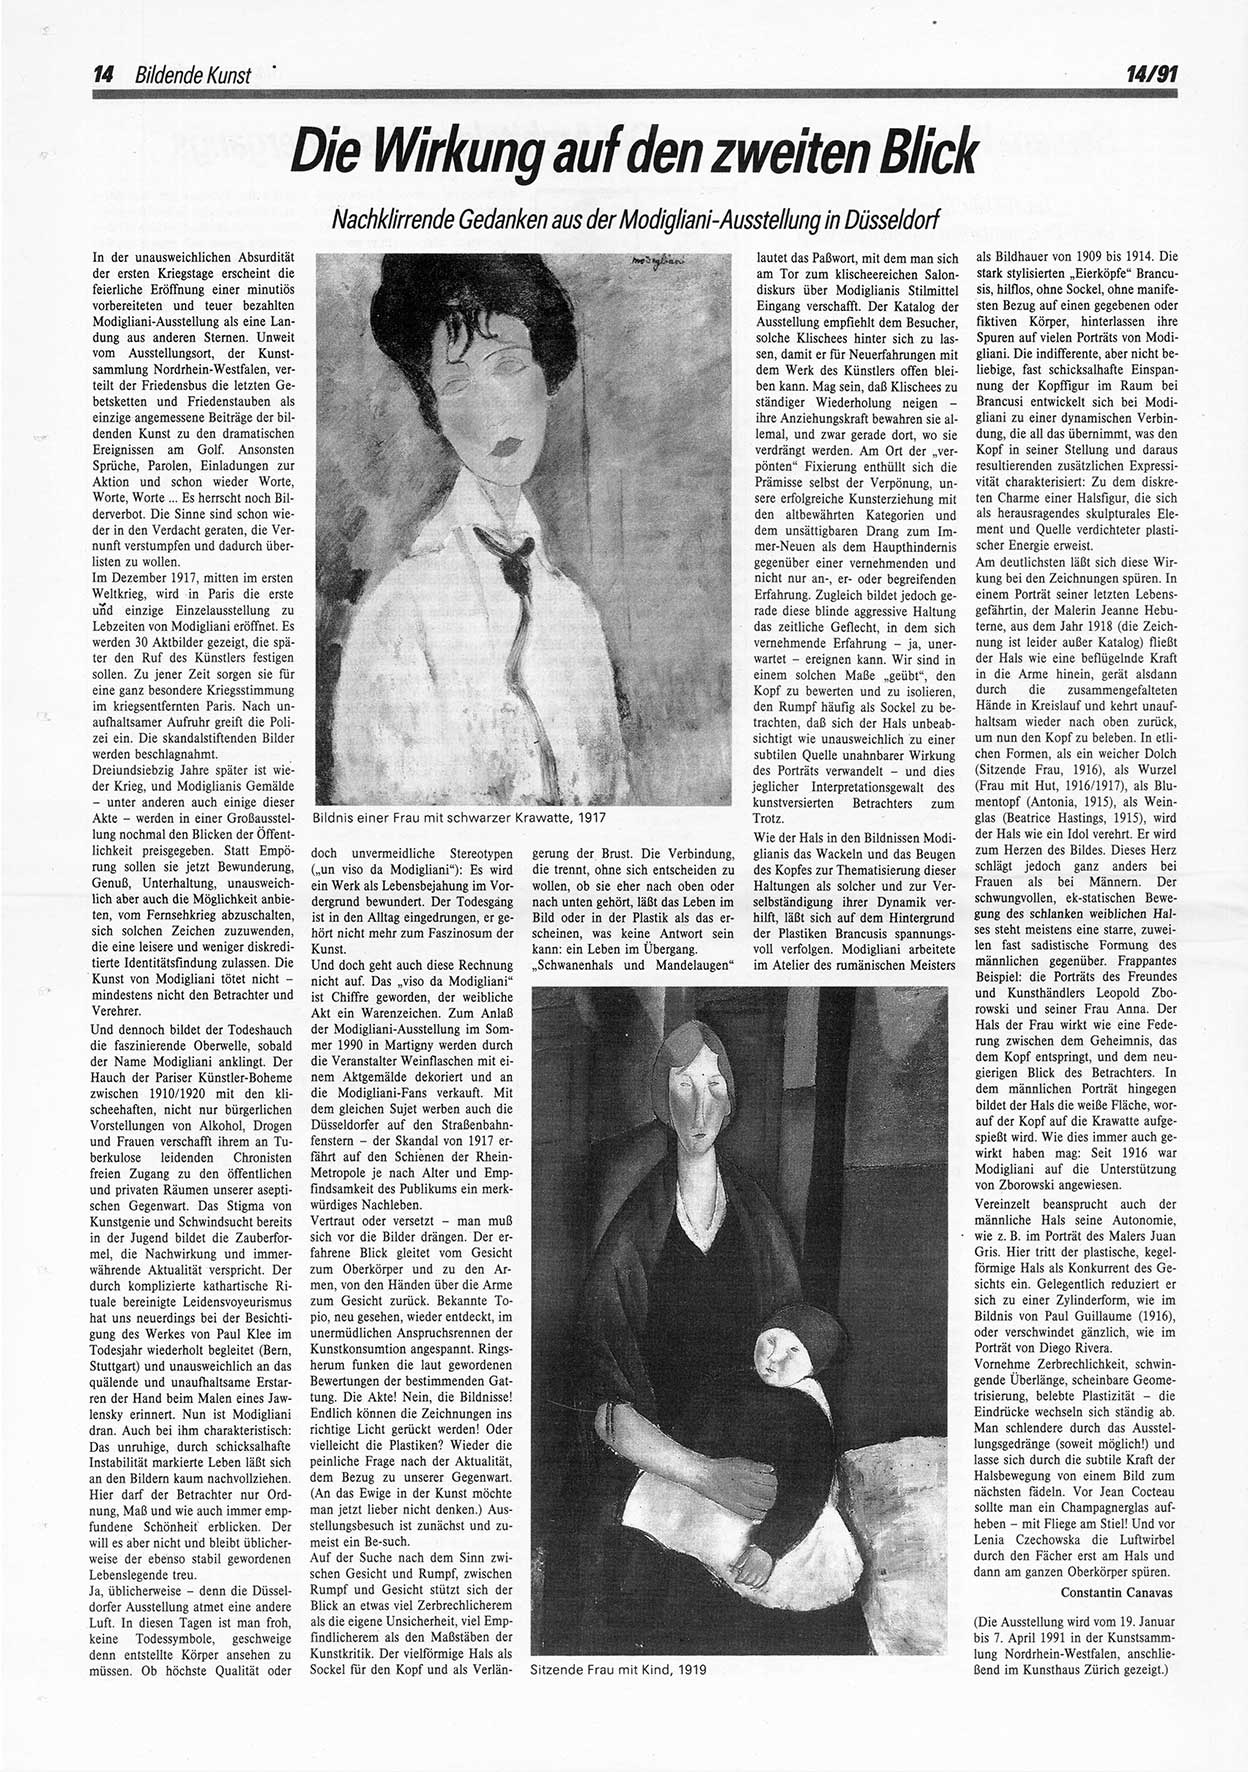 Die Andere, Unabhängige Wochenzeitung für Politik, Kultur und Kunst, Ausgabe 14 vom 3.4.1991, Seite 14 (And. W.-Zg. Ausg. 14 1991, S. 14)